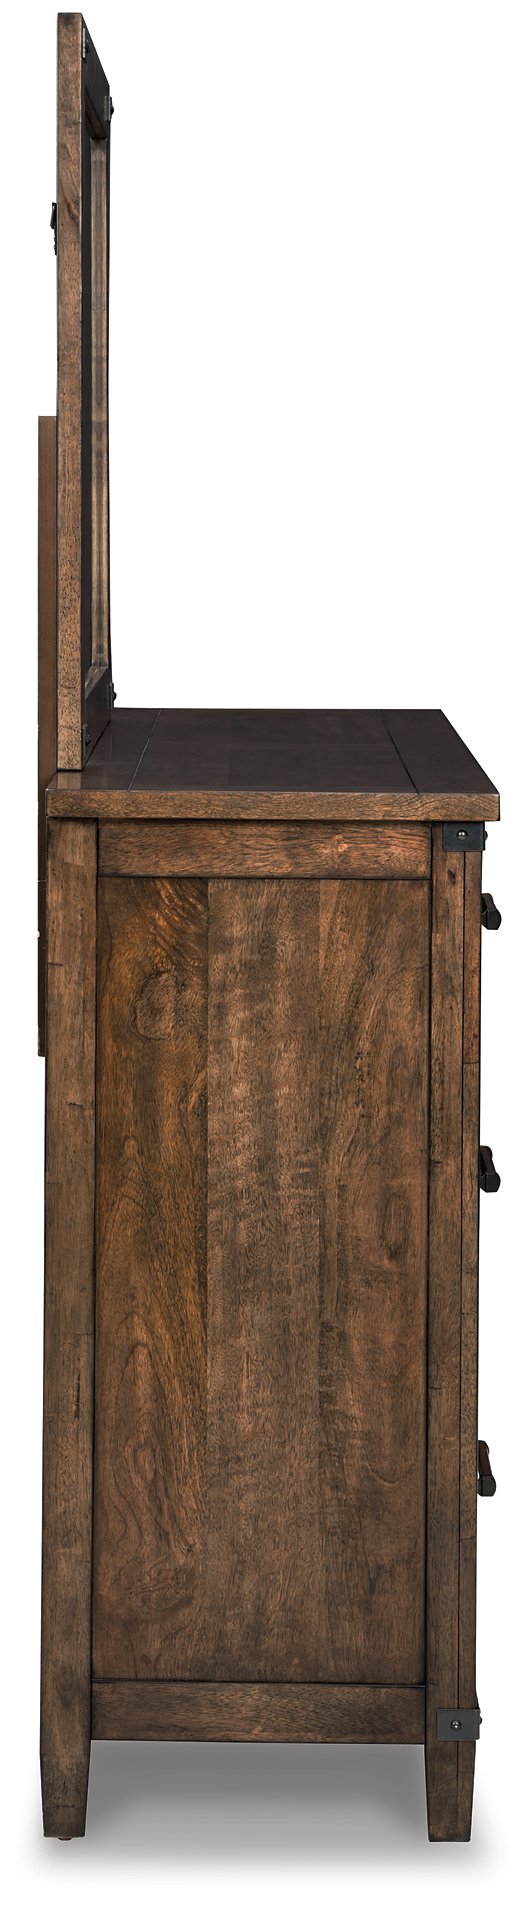 Wyattfield Dresser and Mirror - Half Price Furniture